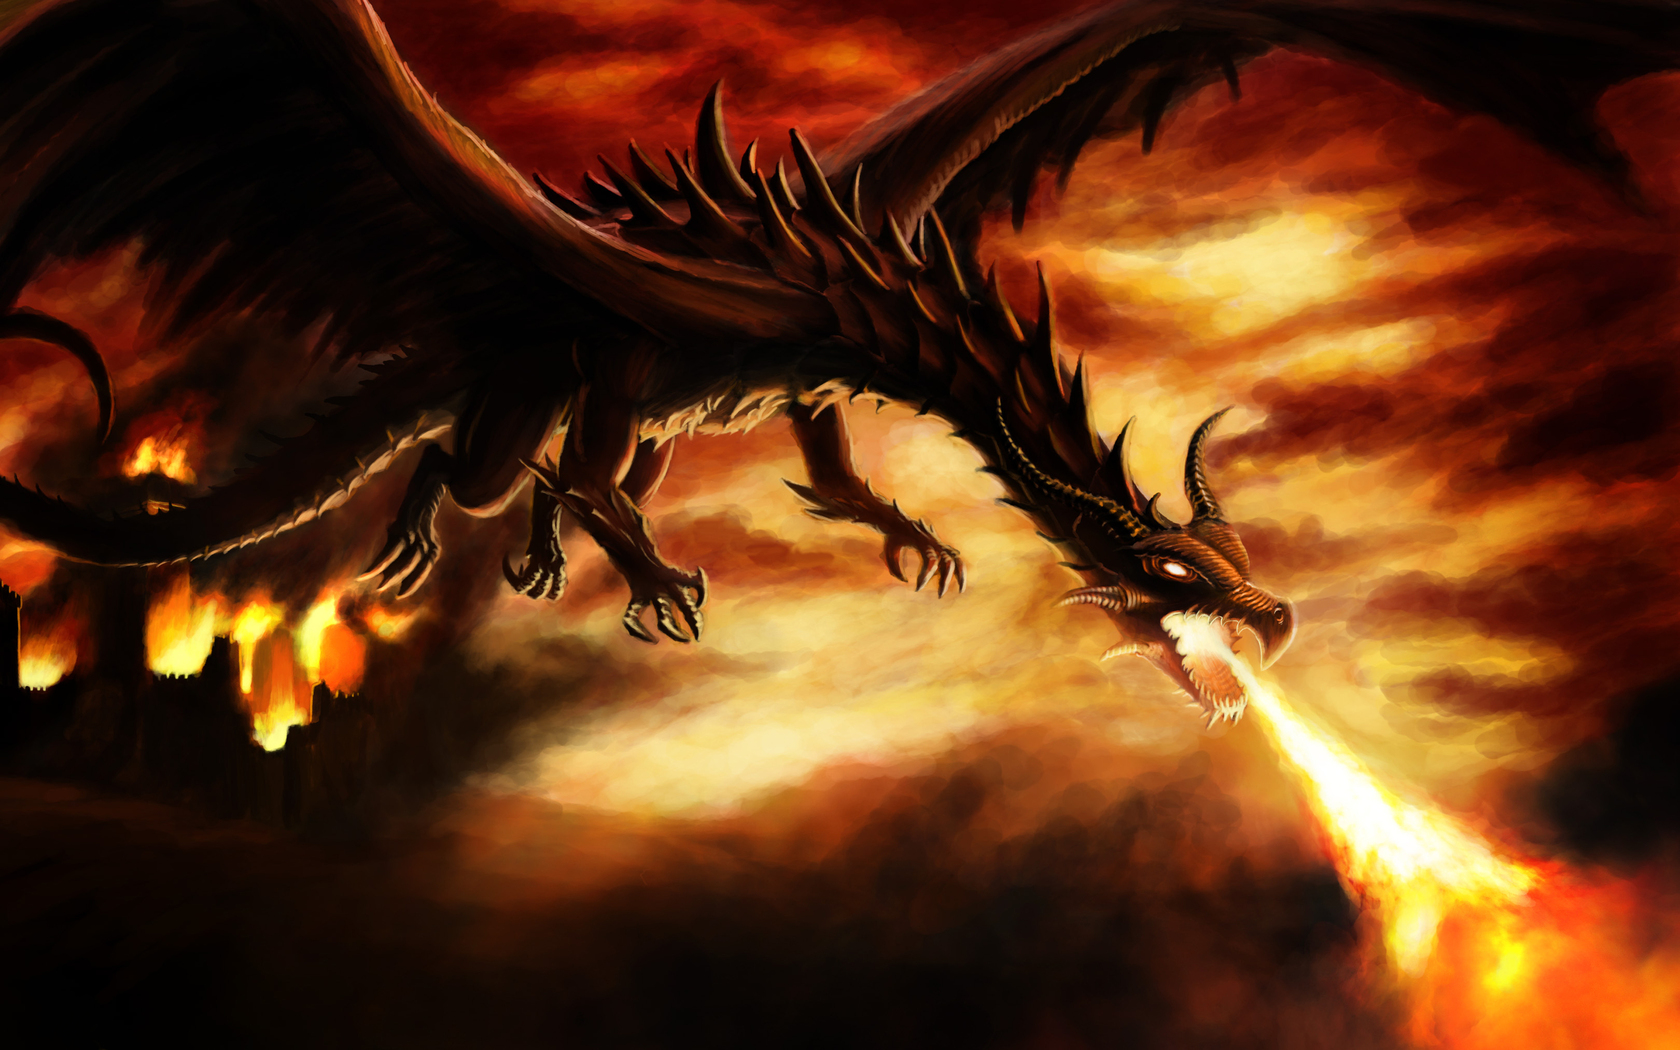 dragoni wallpaper hd,drago,cg artwork,demone,personaggio fittizio,fiamma